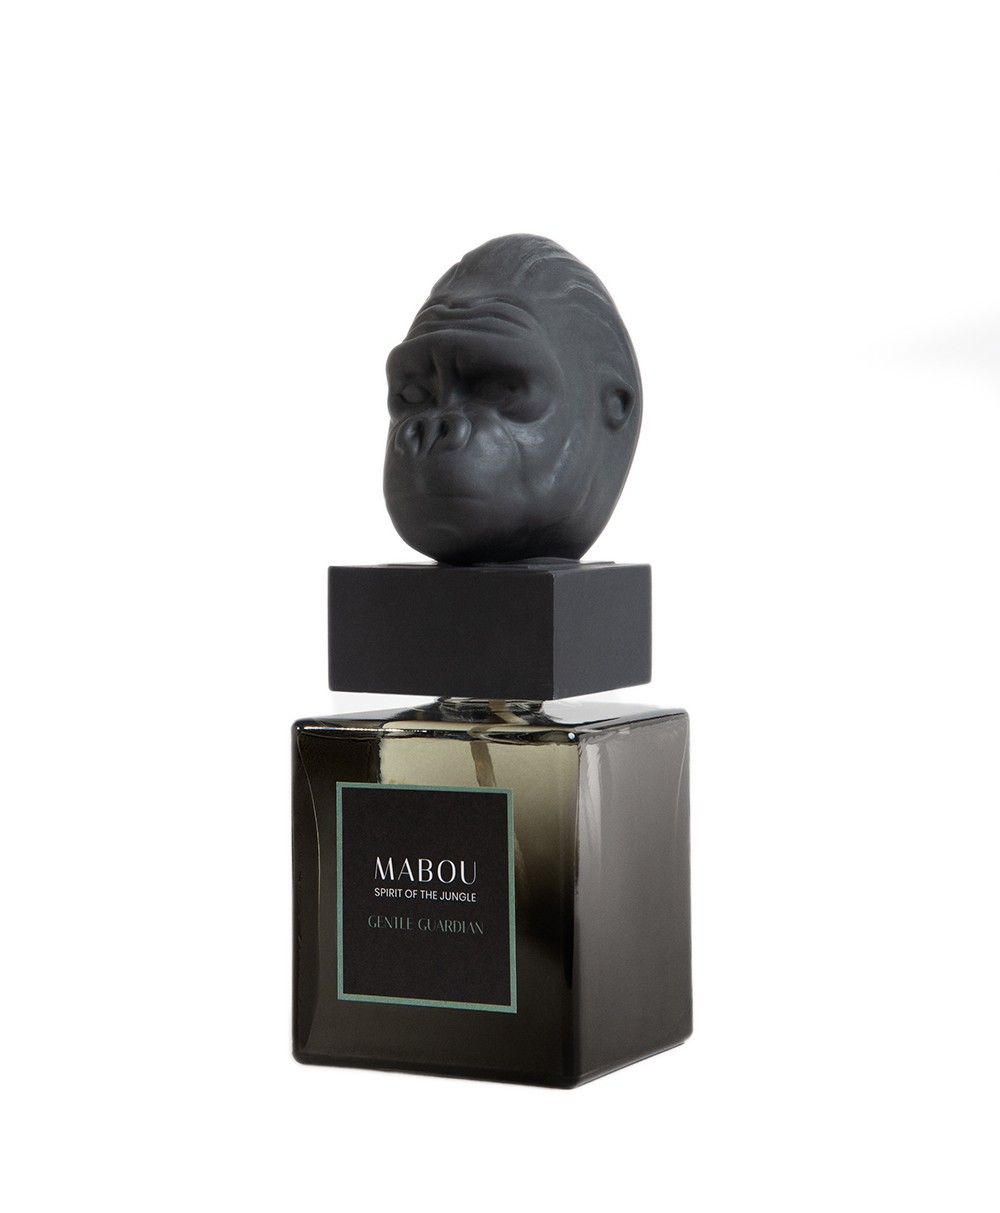 Produktbild der Duftskulptur Gorilla Gentle Giant von Mabou – im RAUM concept store